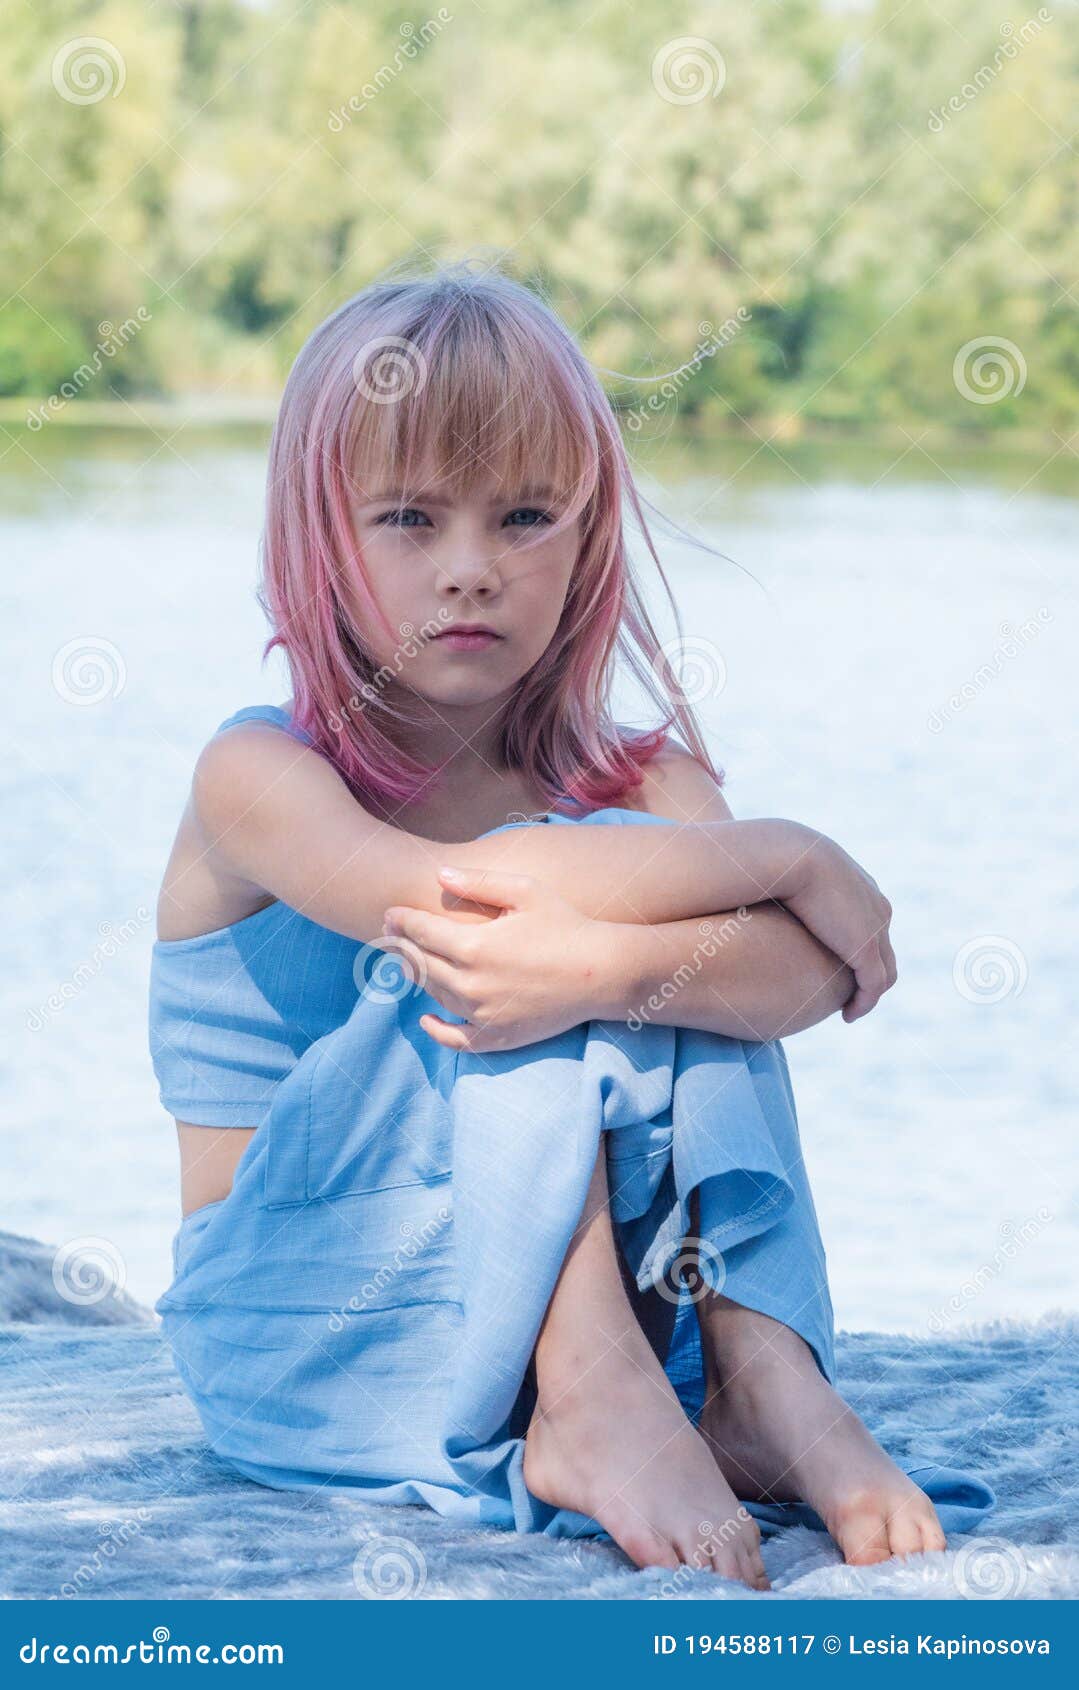 Cute Child Girl Portrait . Outdoor Portrait of Cute Little Girl in ...